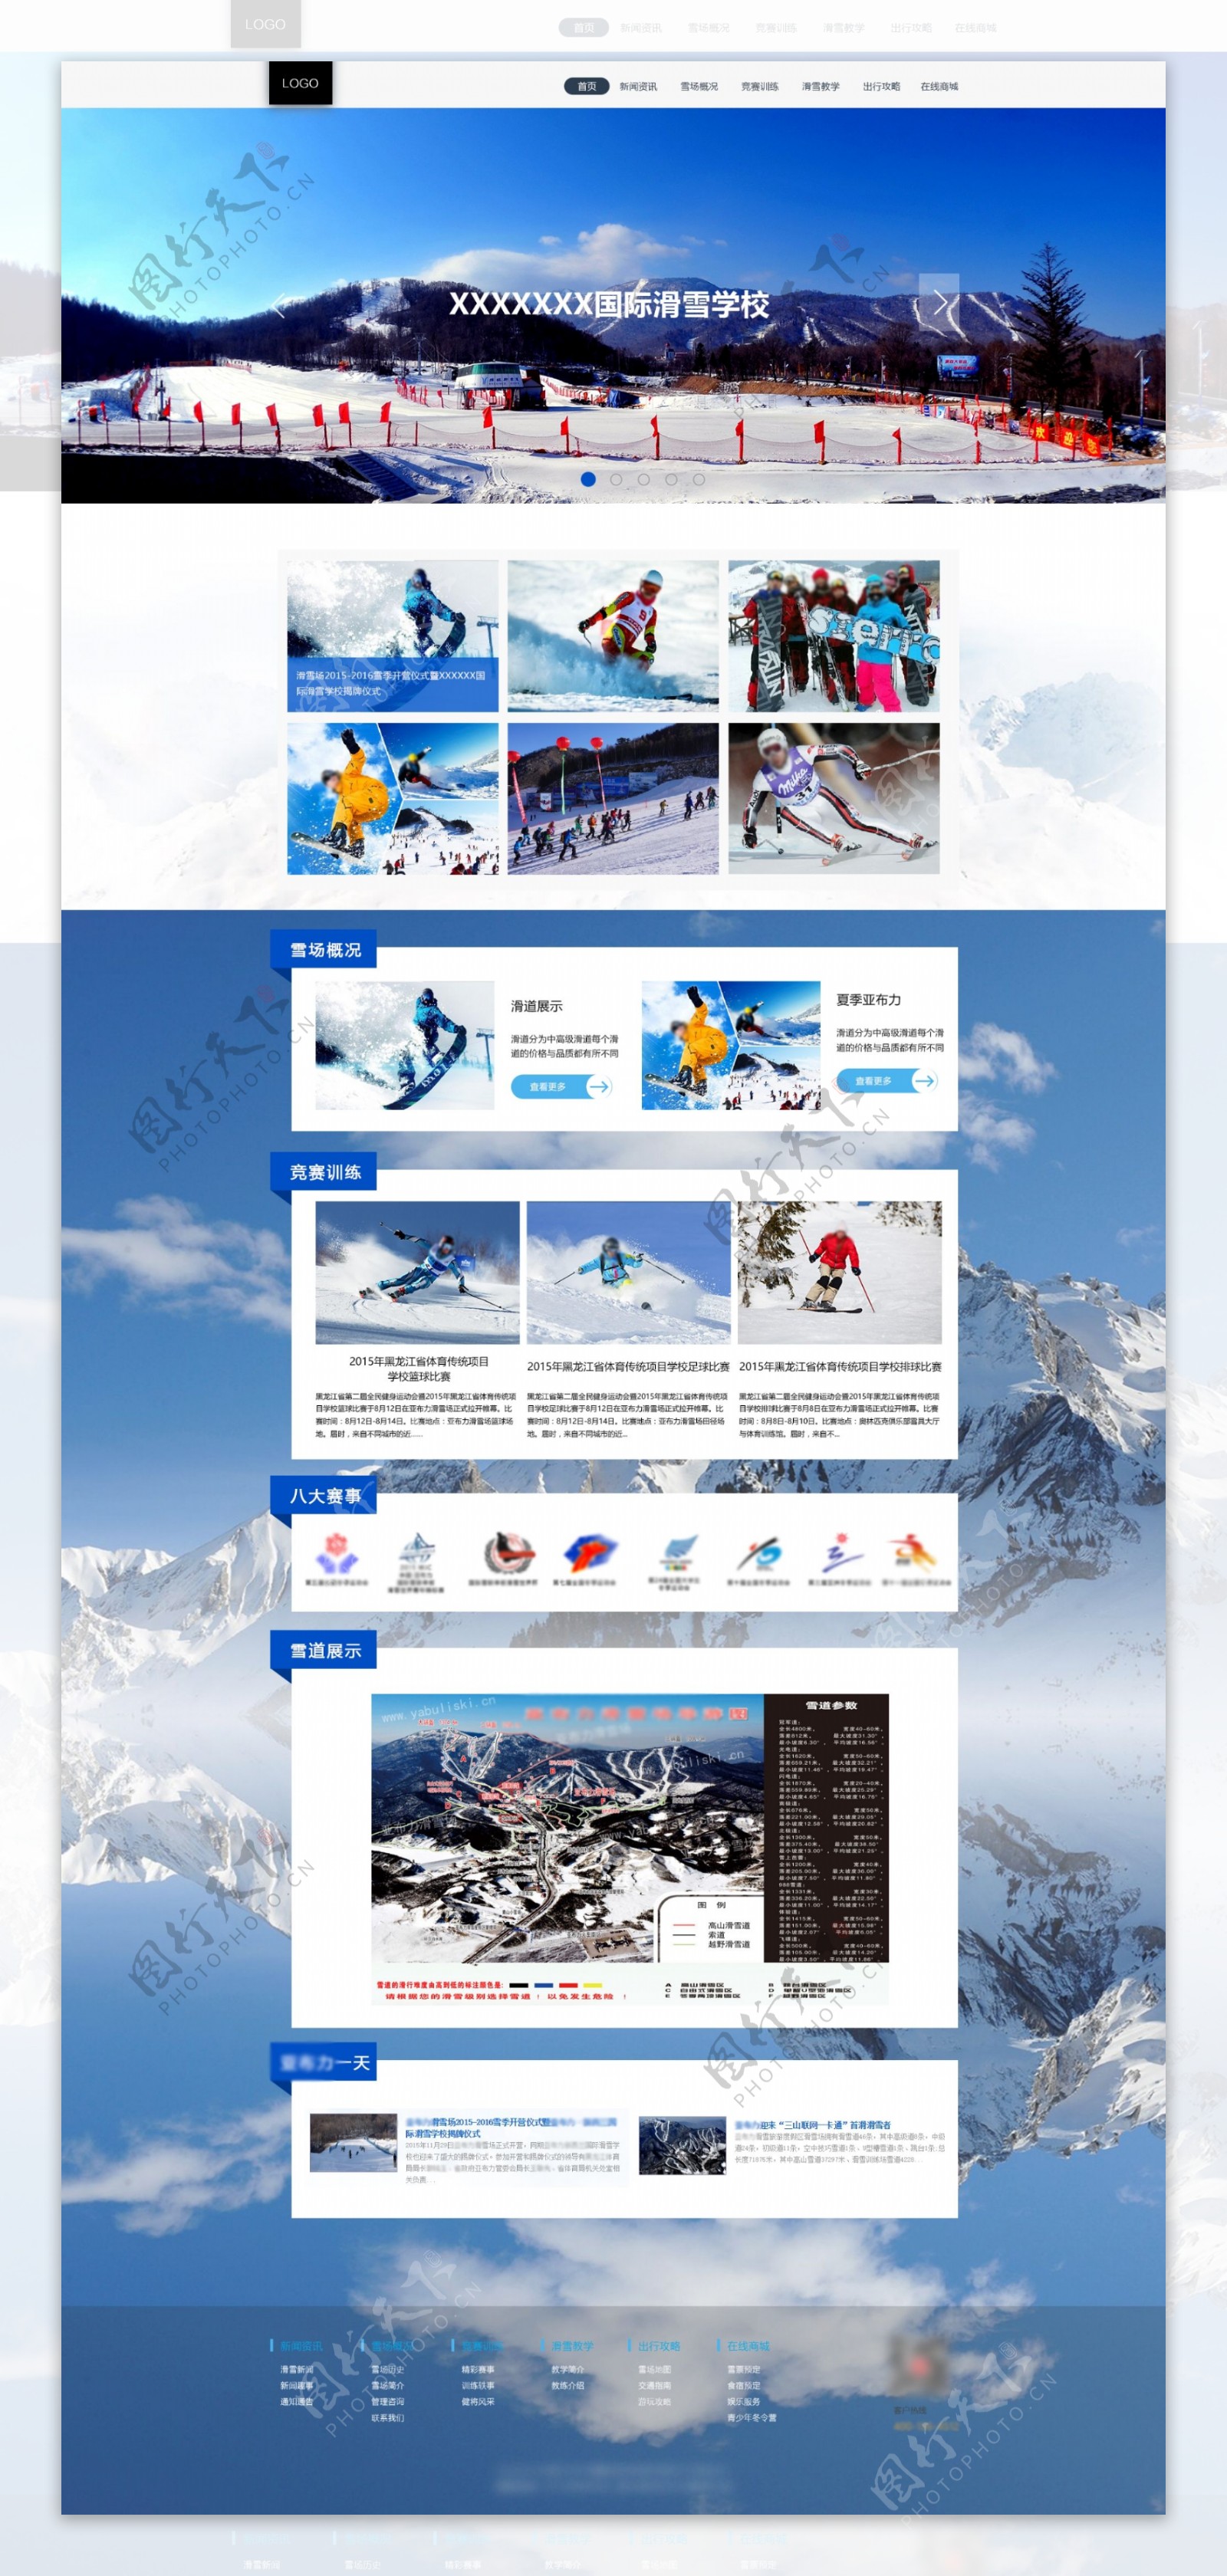 滑雪场首页卡片式布局雪山背景深蓝色